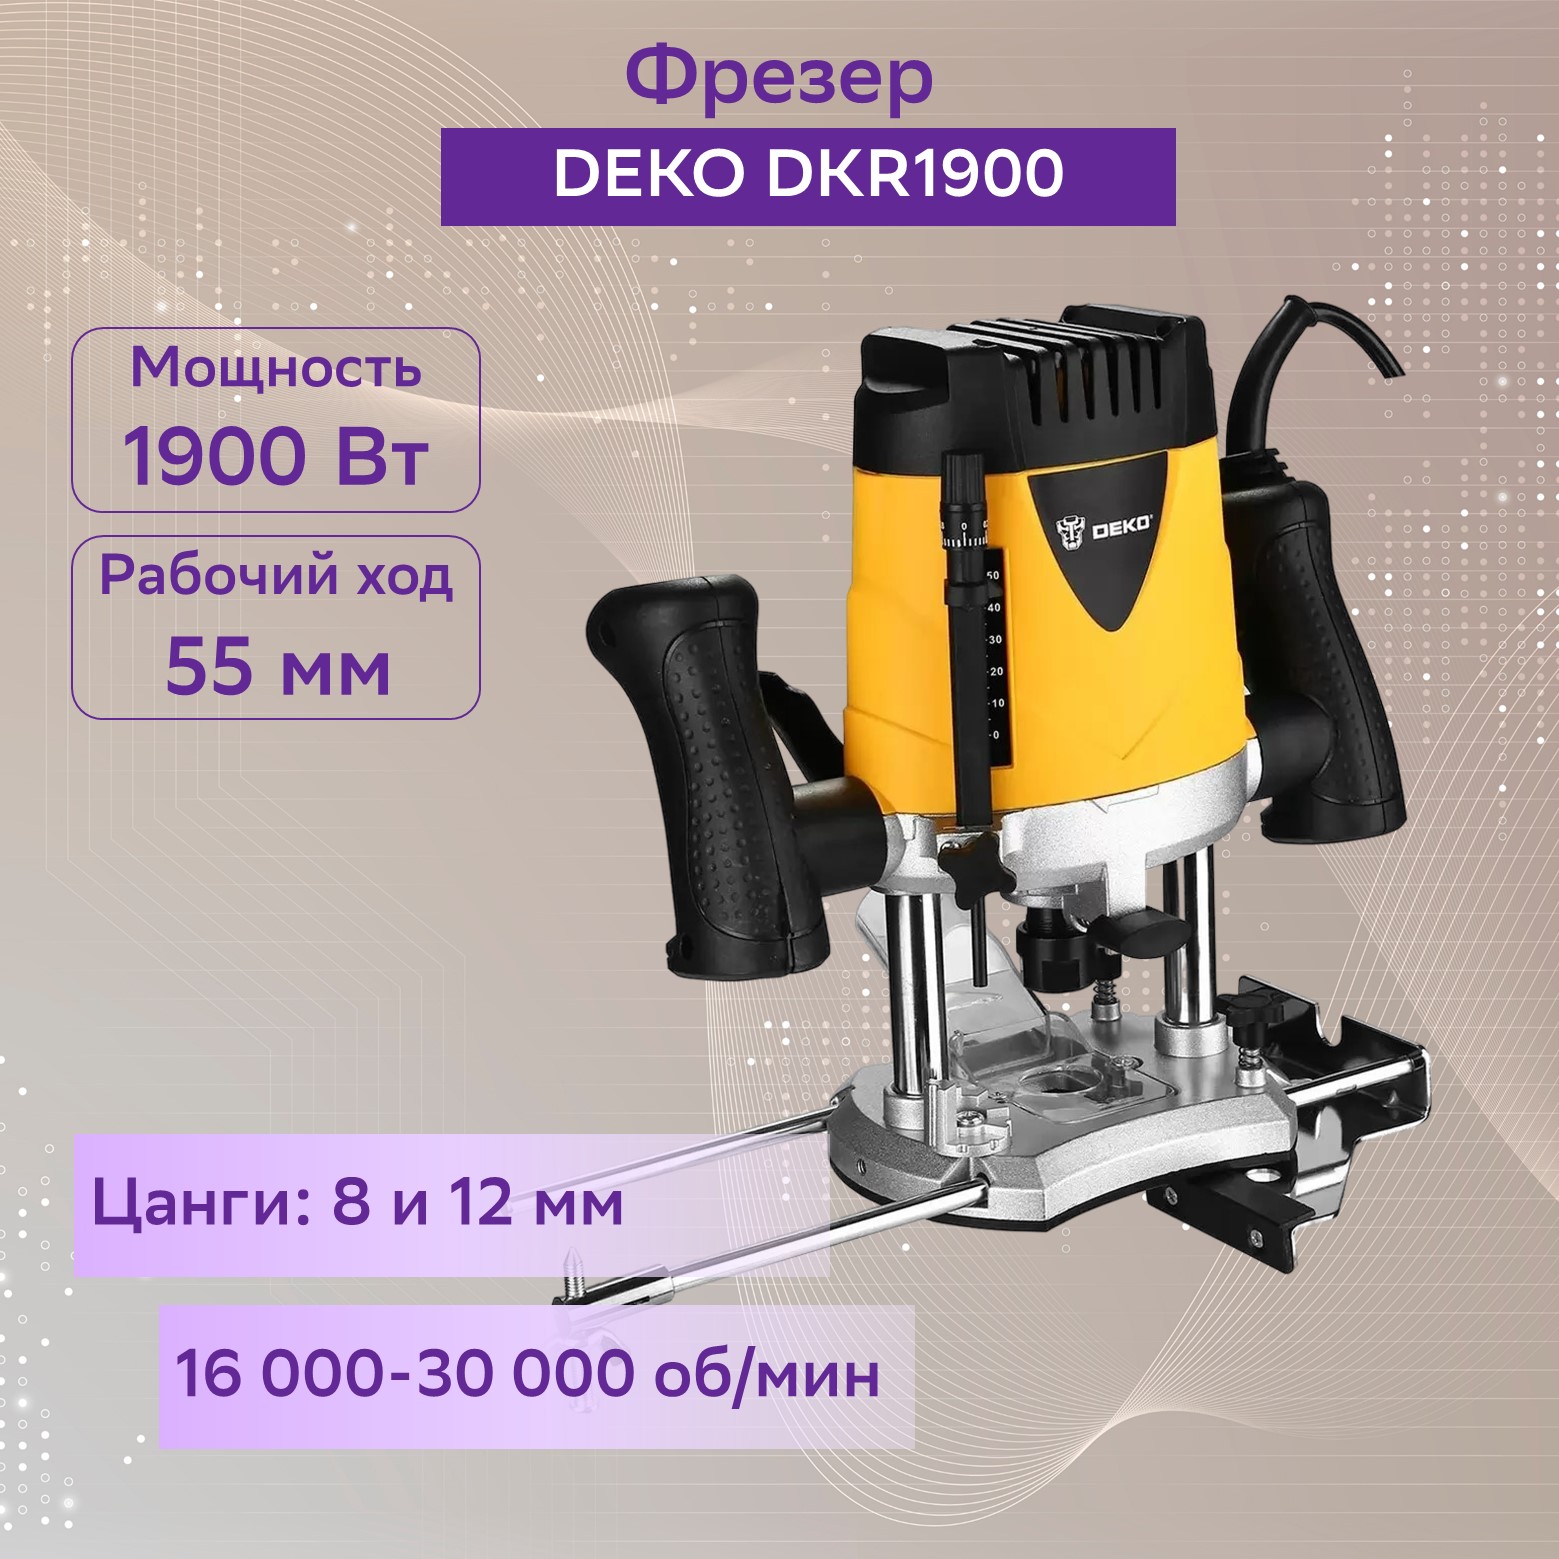  Deko DKR1900 вертикальный, 1900 Вт, 16000-30000 ходов/мин  .